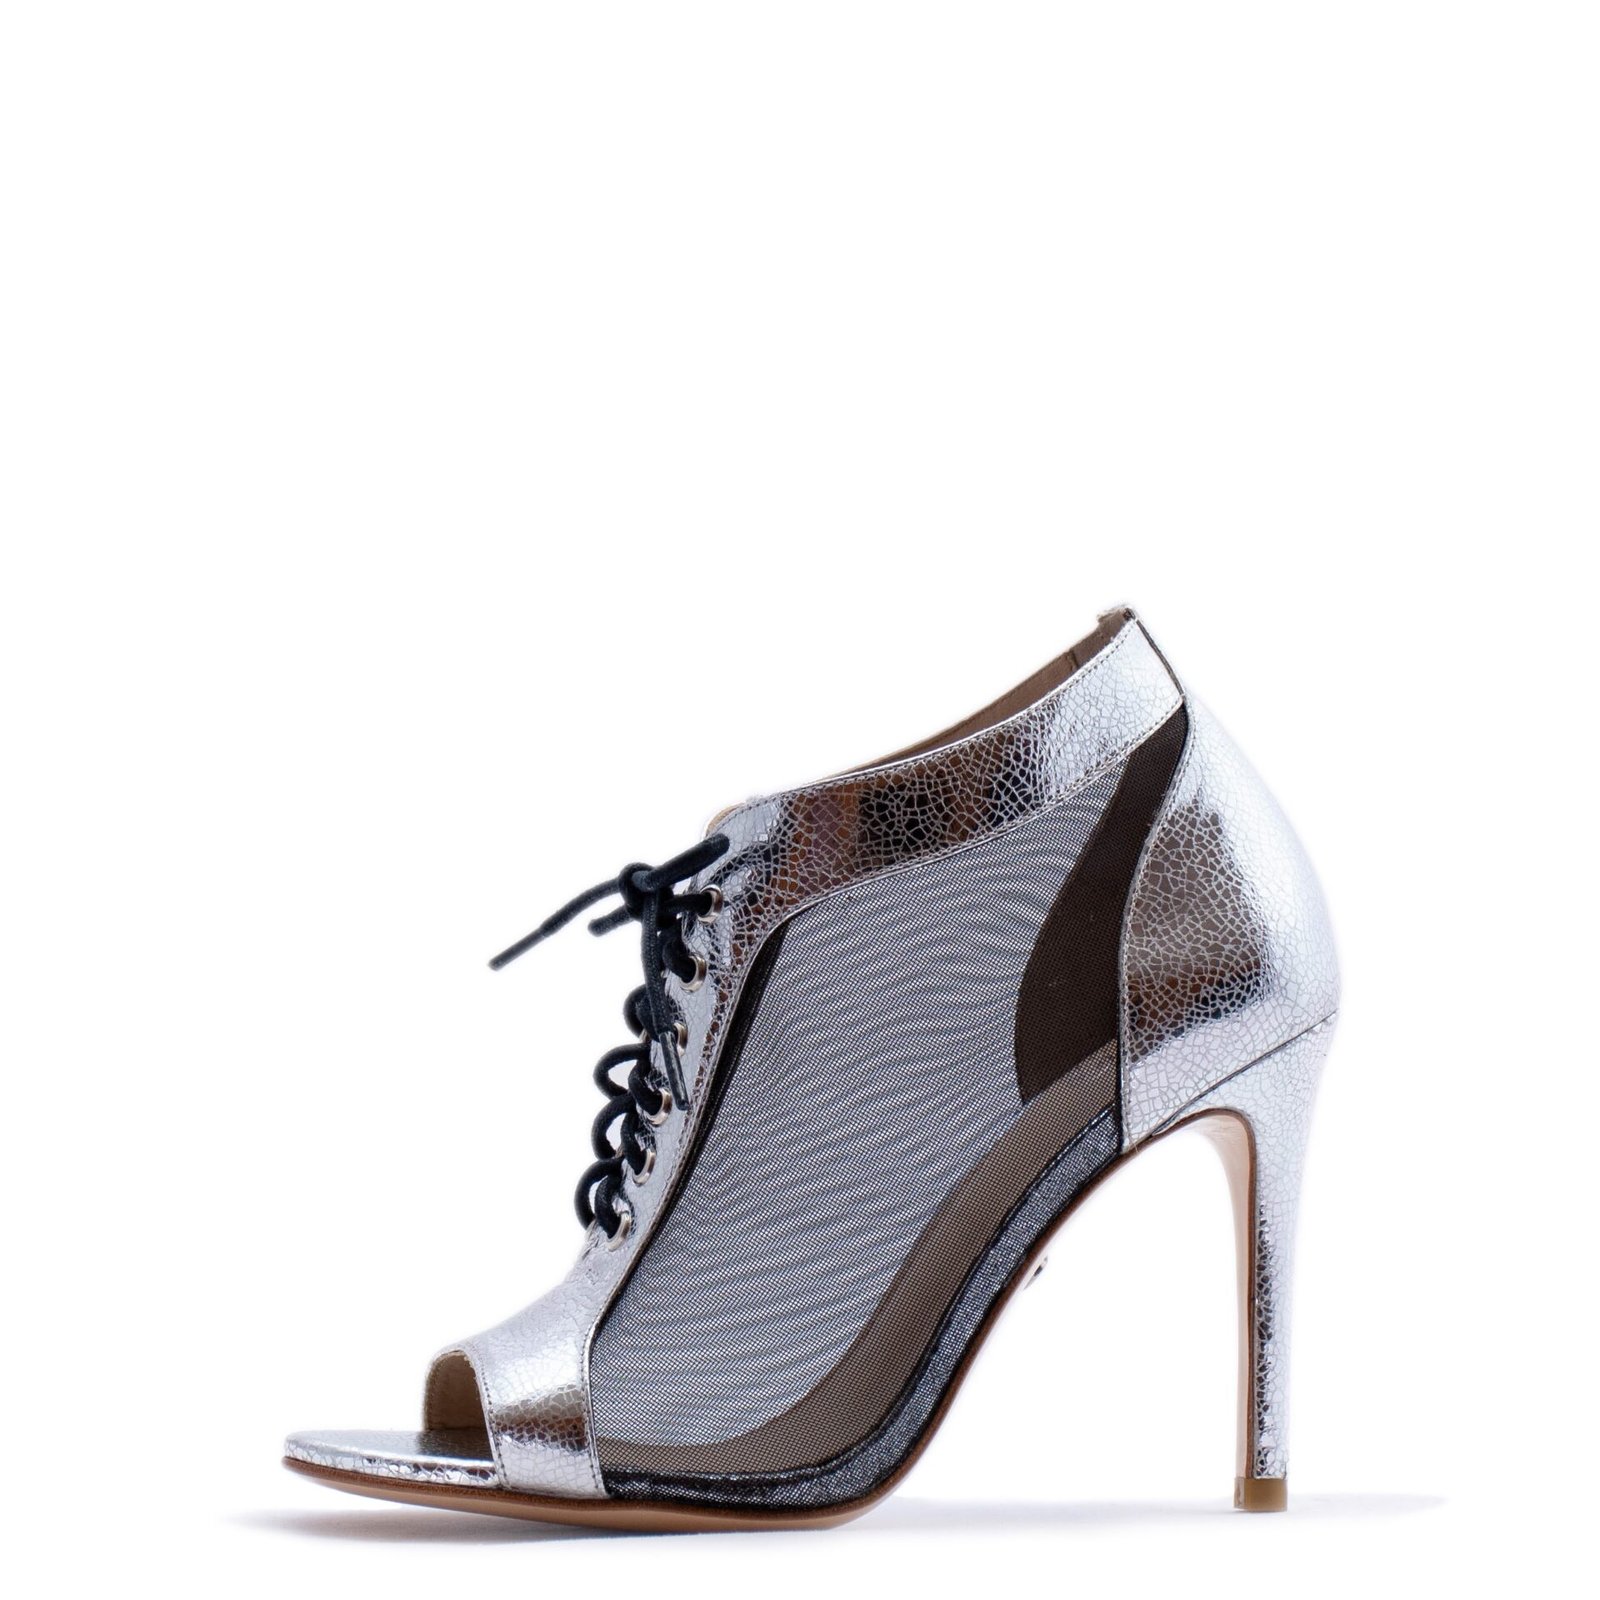 Silver & black open toe bootie heels for men & women